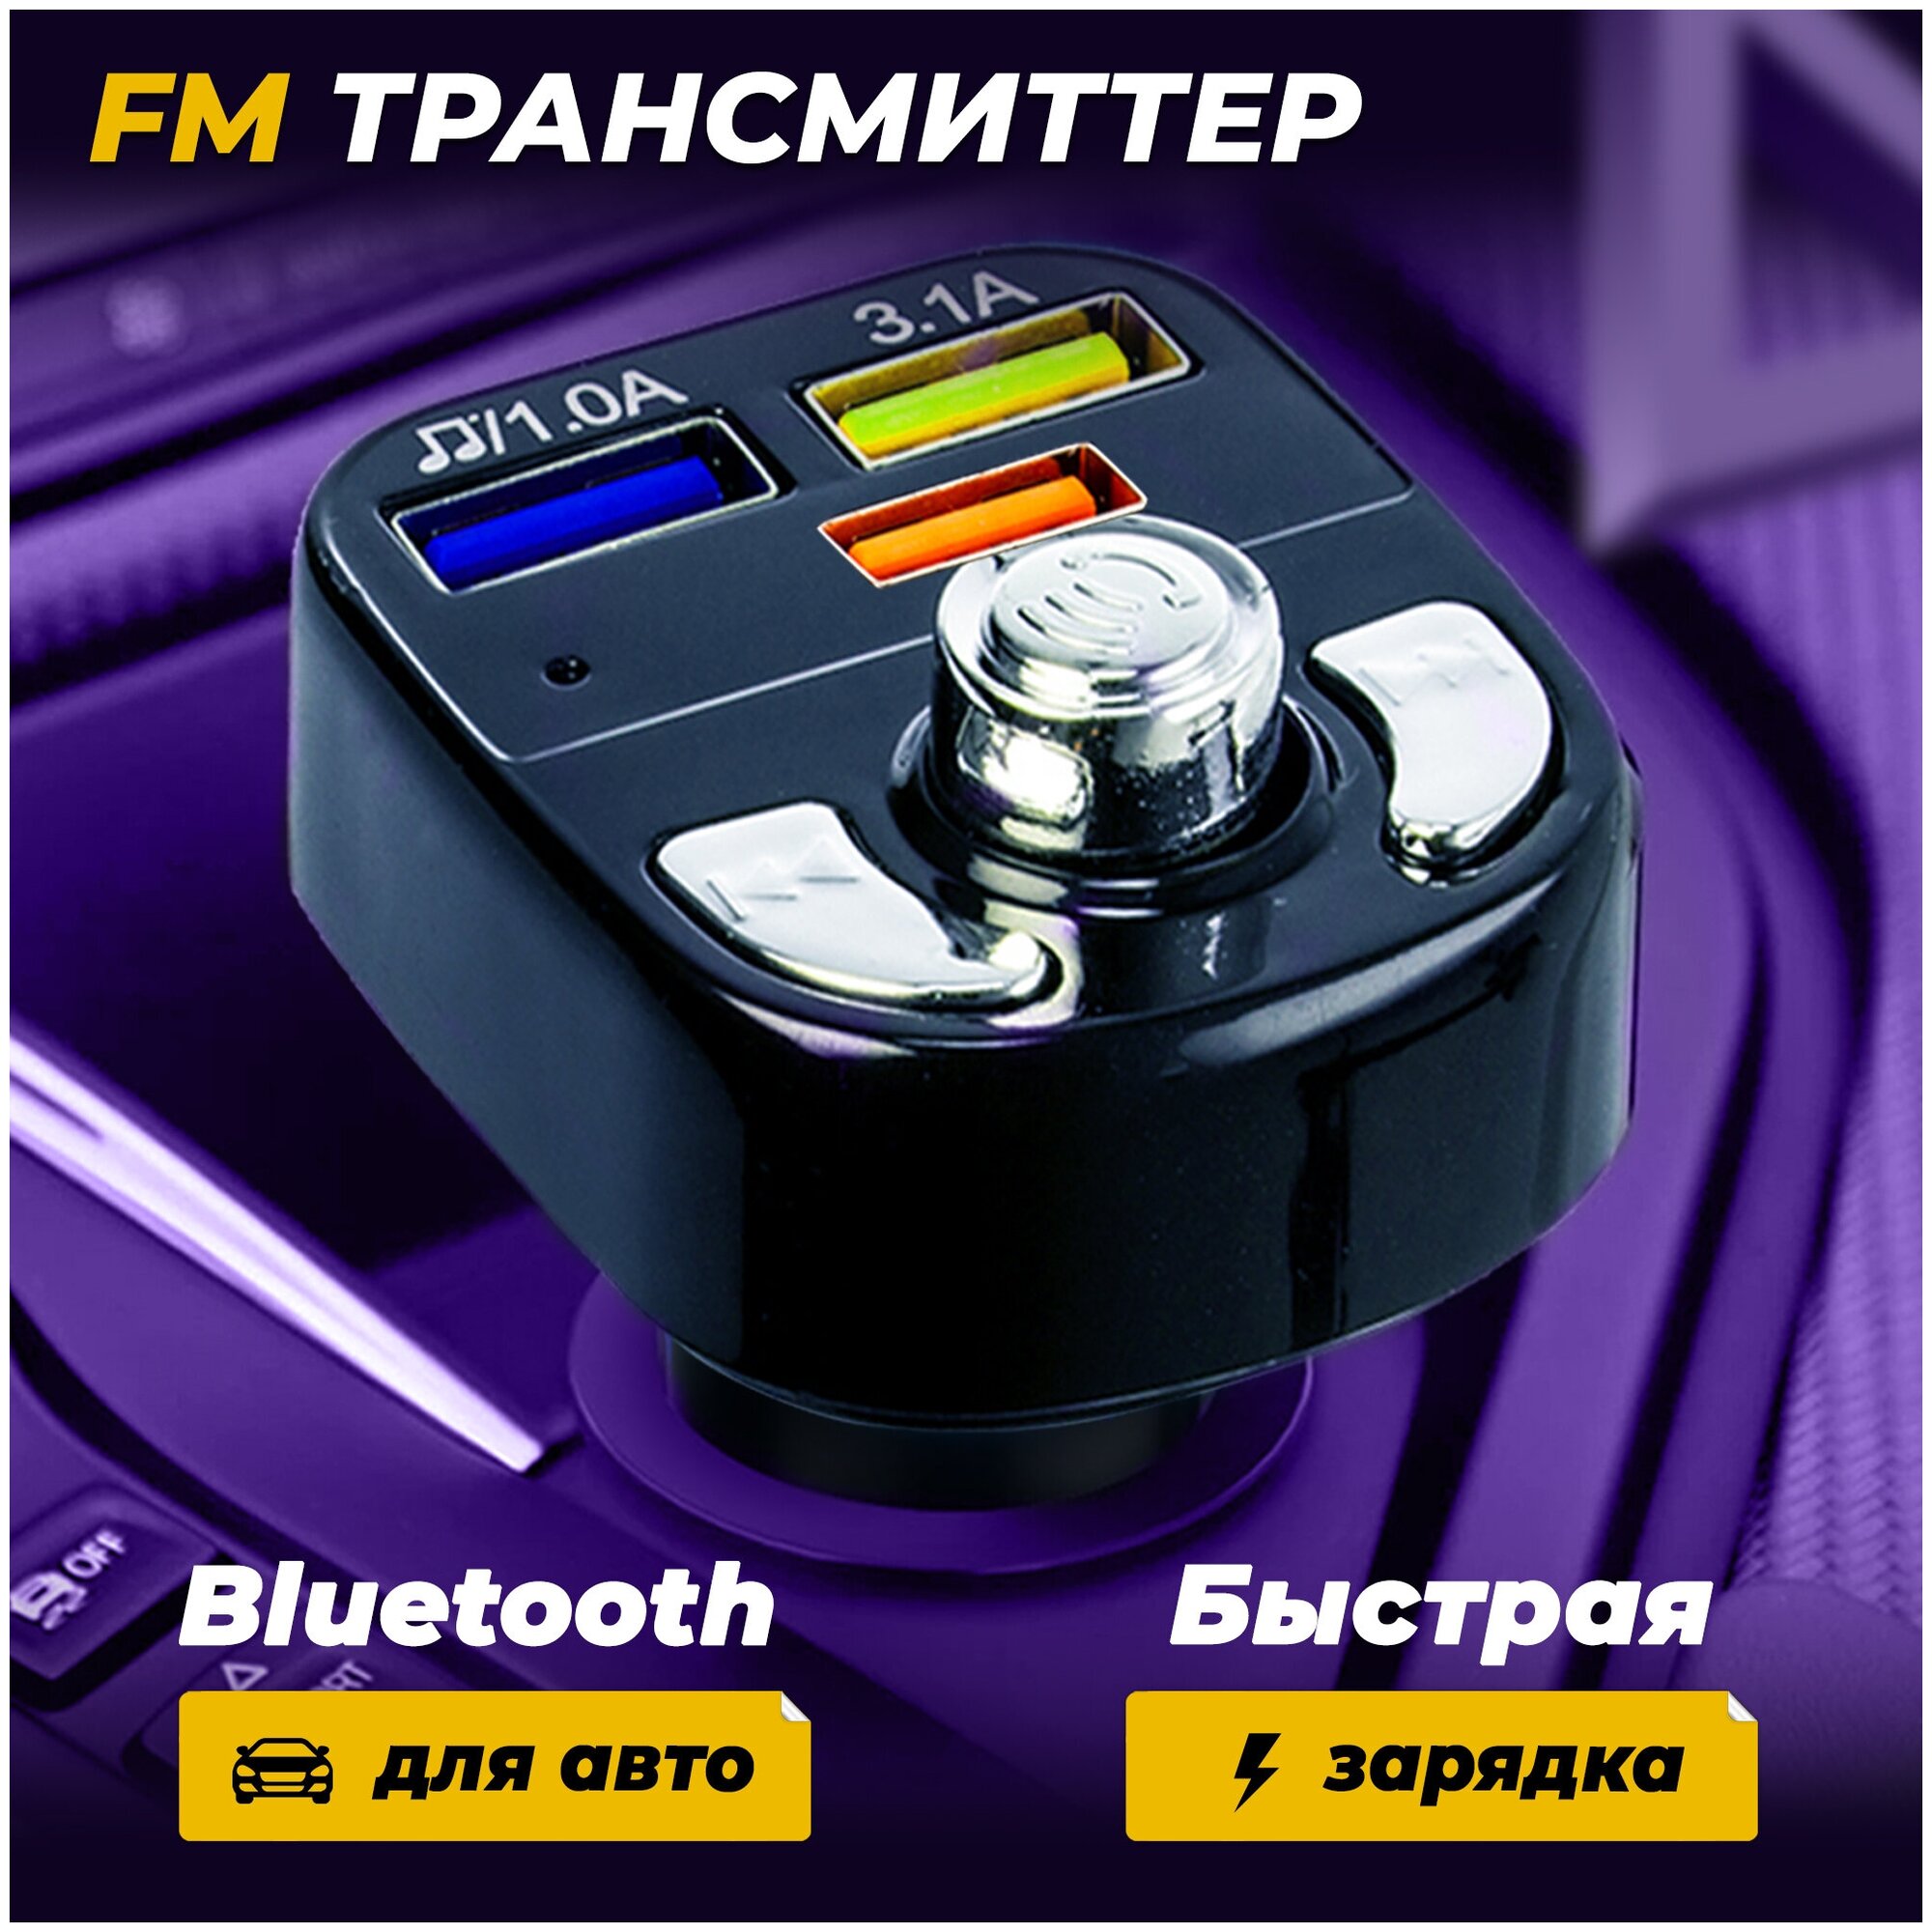 FM трансмиттер Bluetooth автомобильный с дисплеем и зарядкой USB в прикуриватель AMFOX 195, черный / фм модулятор автомобильный, блютуз адаптер в авто